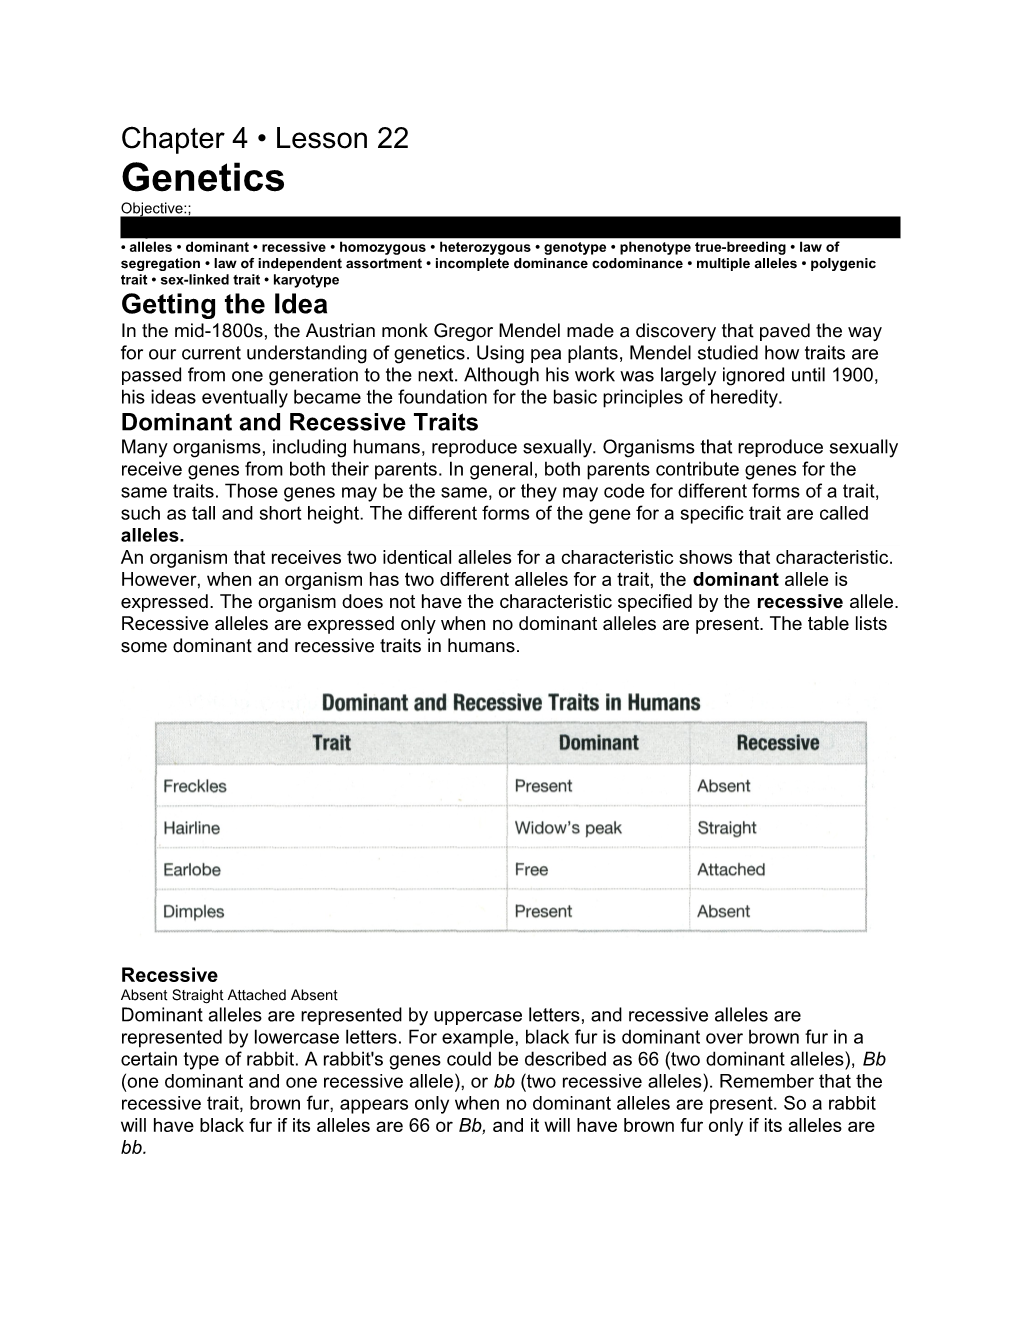 Alleles Dominant Recessive Homozygous Heterozygous Genotype Phenotype True-Breeding Law